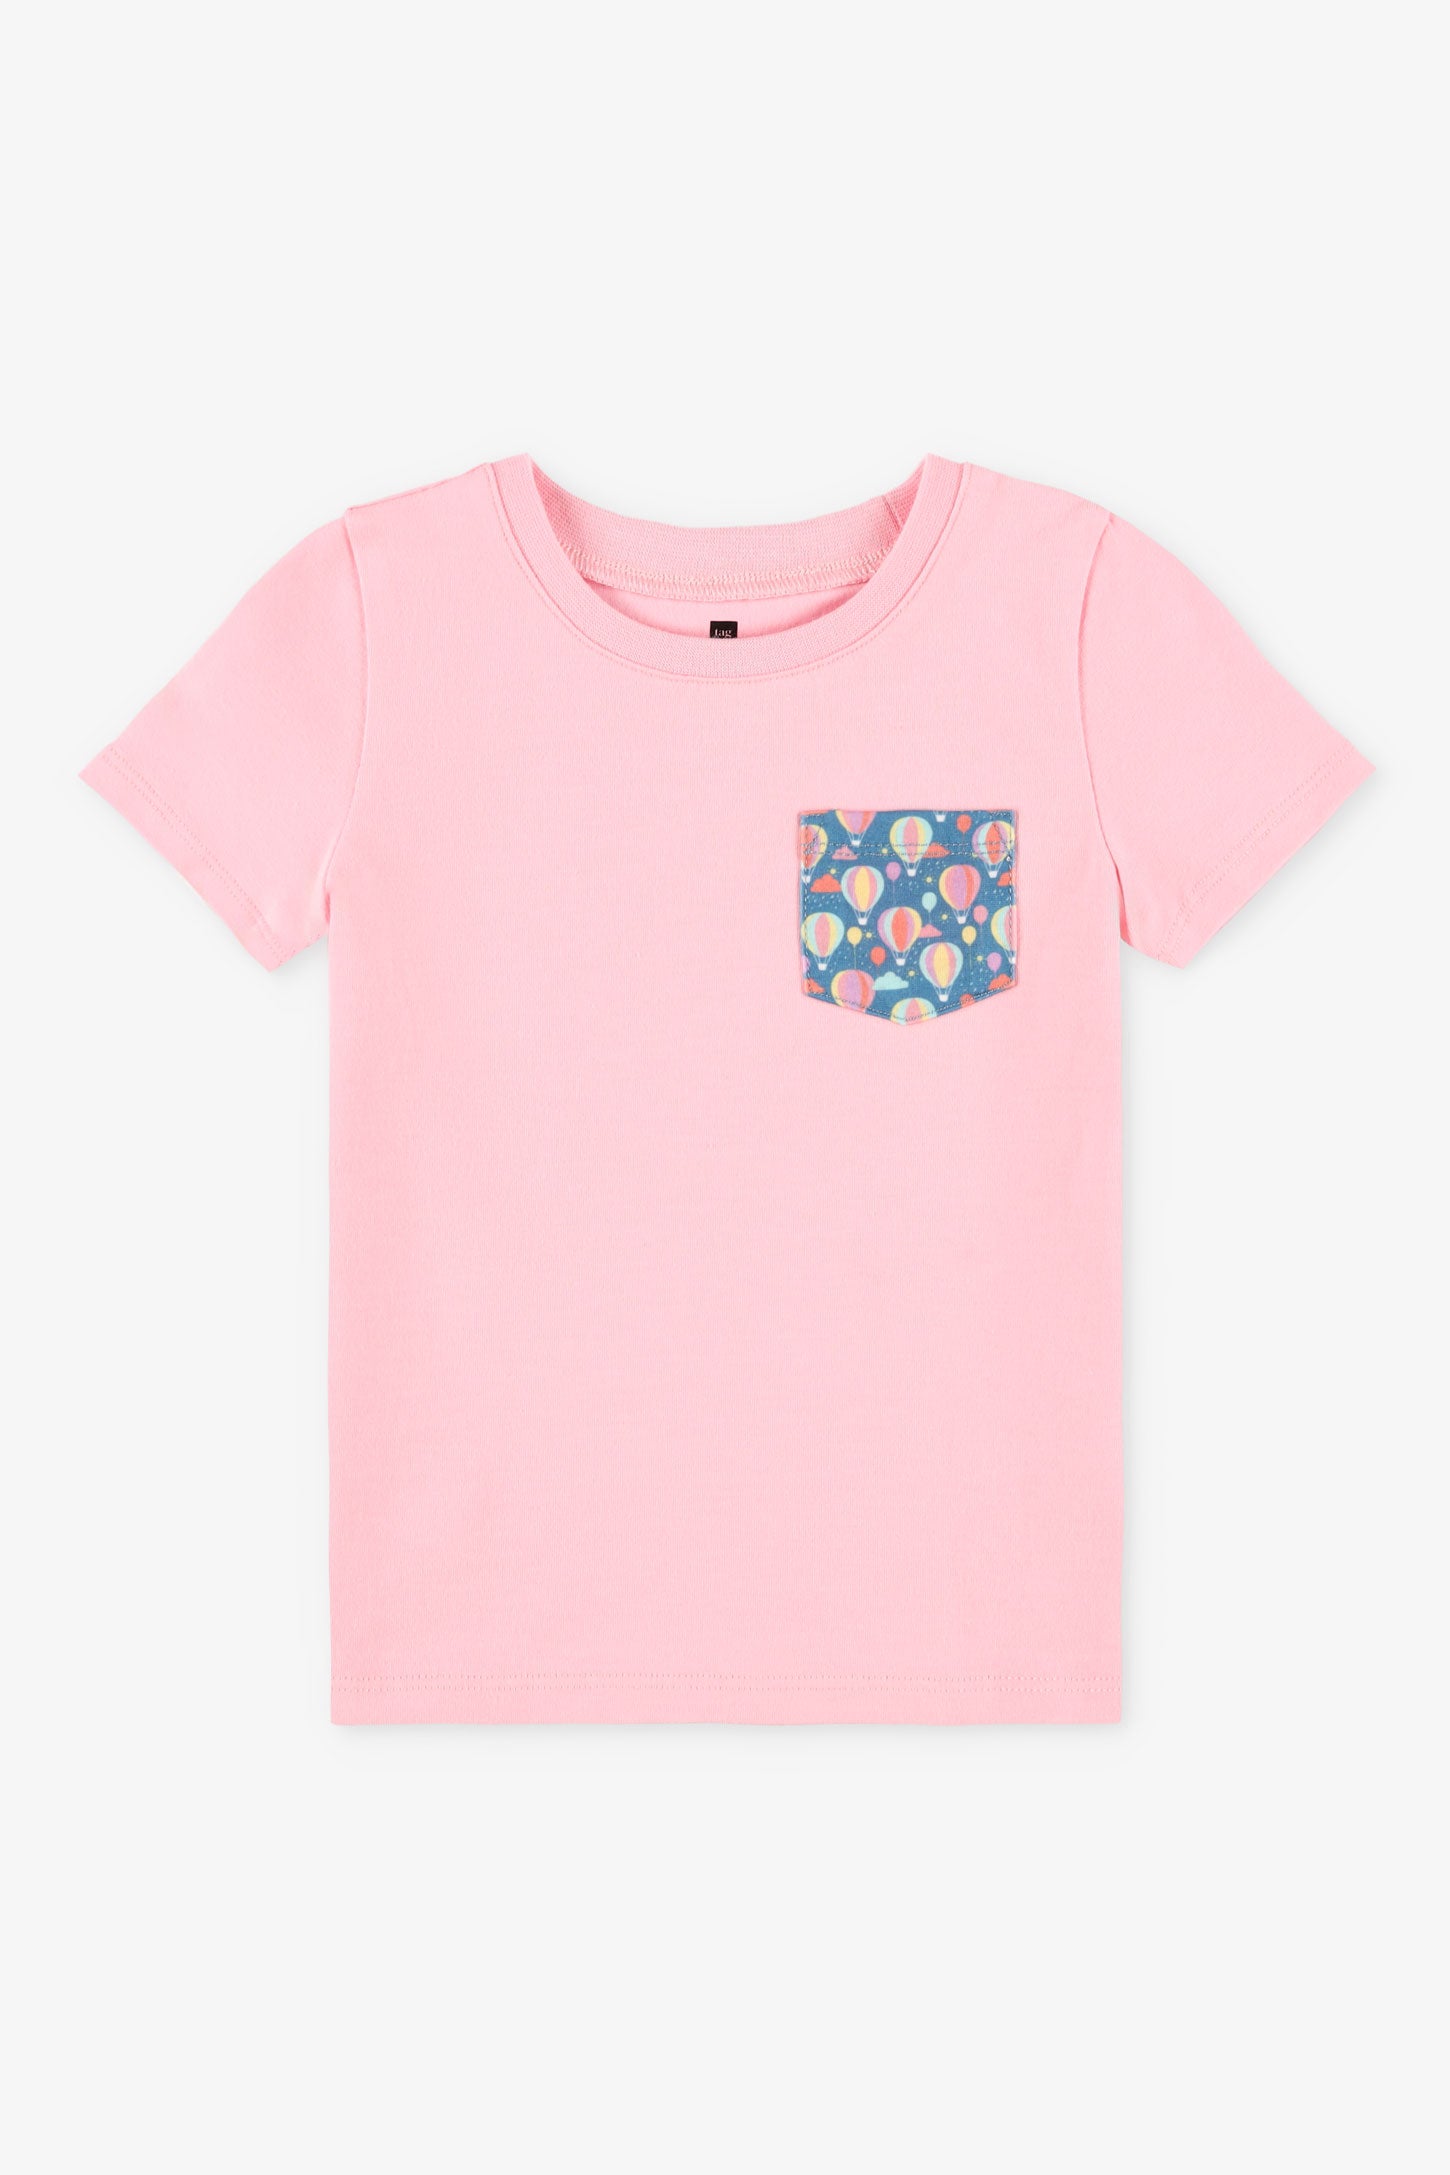 Duos futés, T-shirt à poche, 2T-3T, 2/20$ - Bébé fille && ROSE PALE